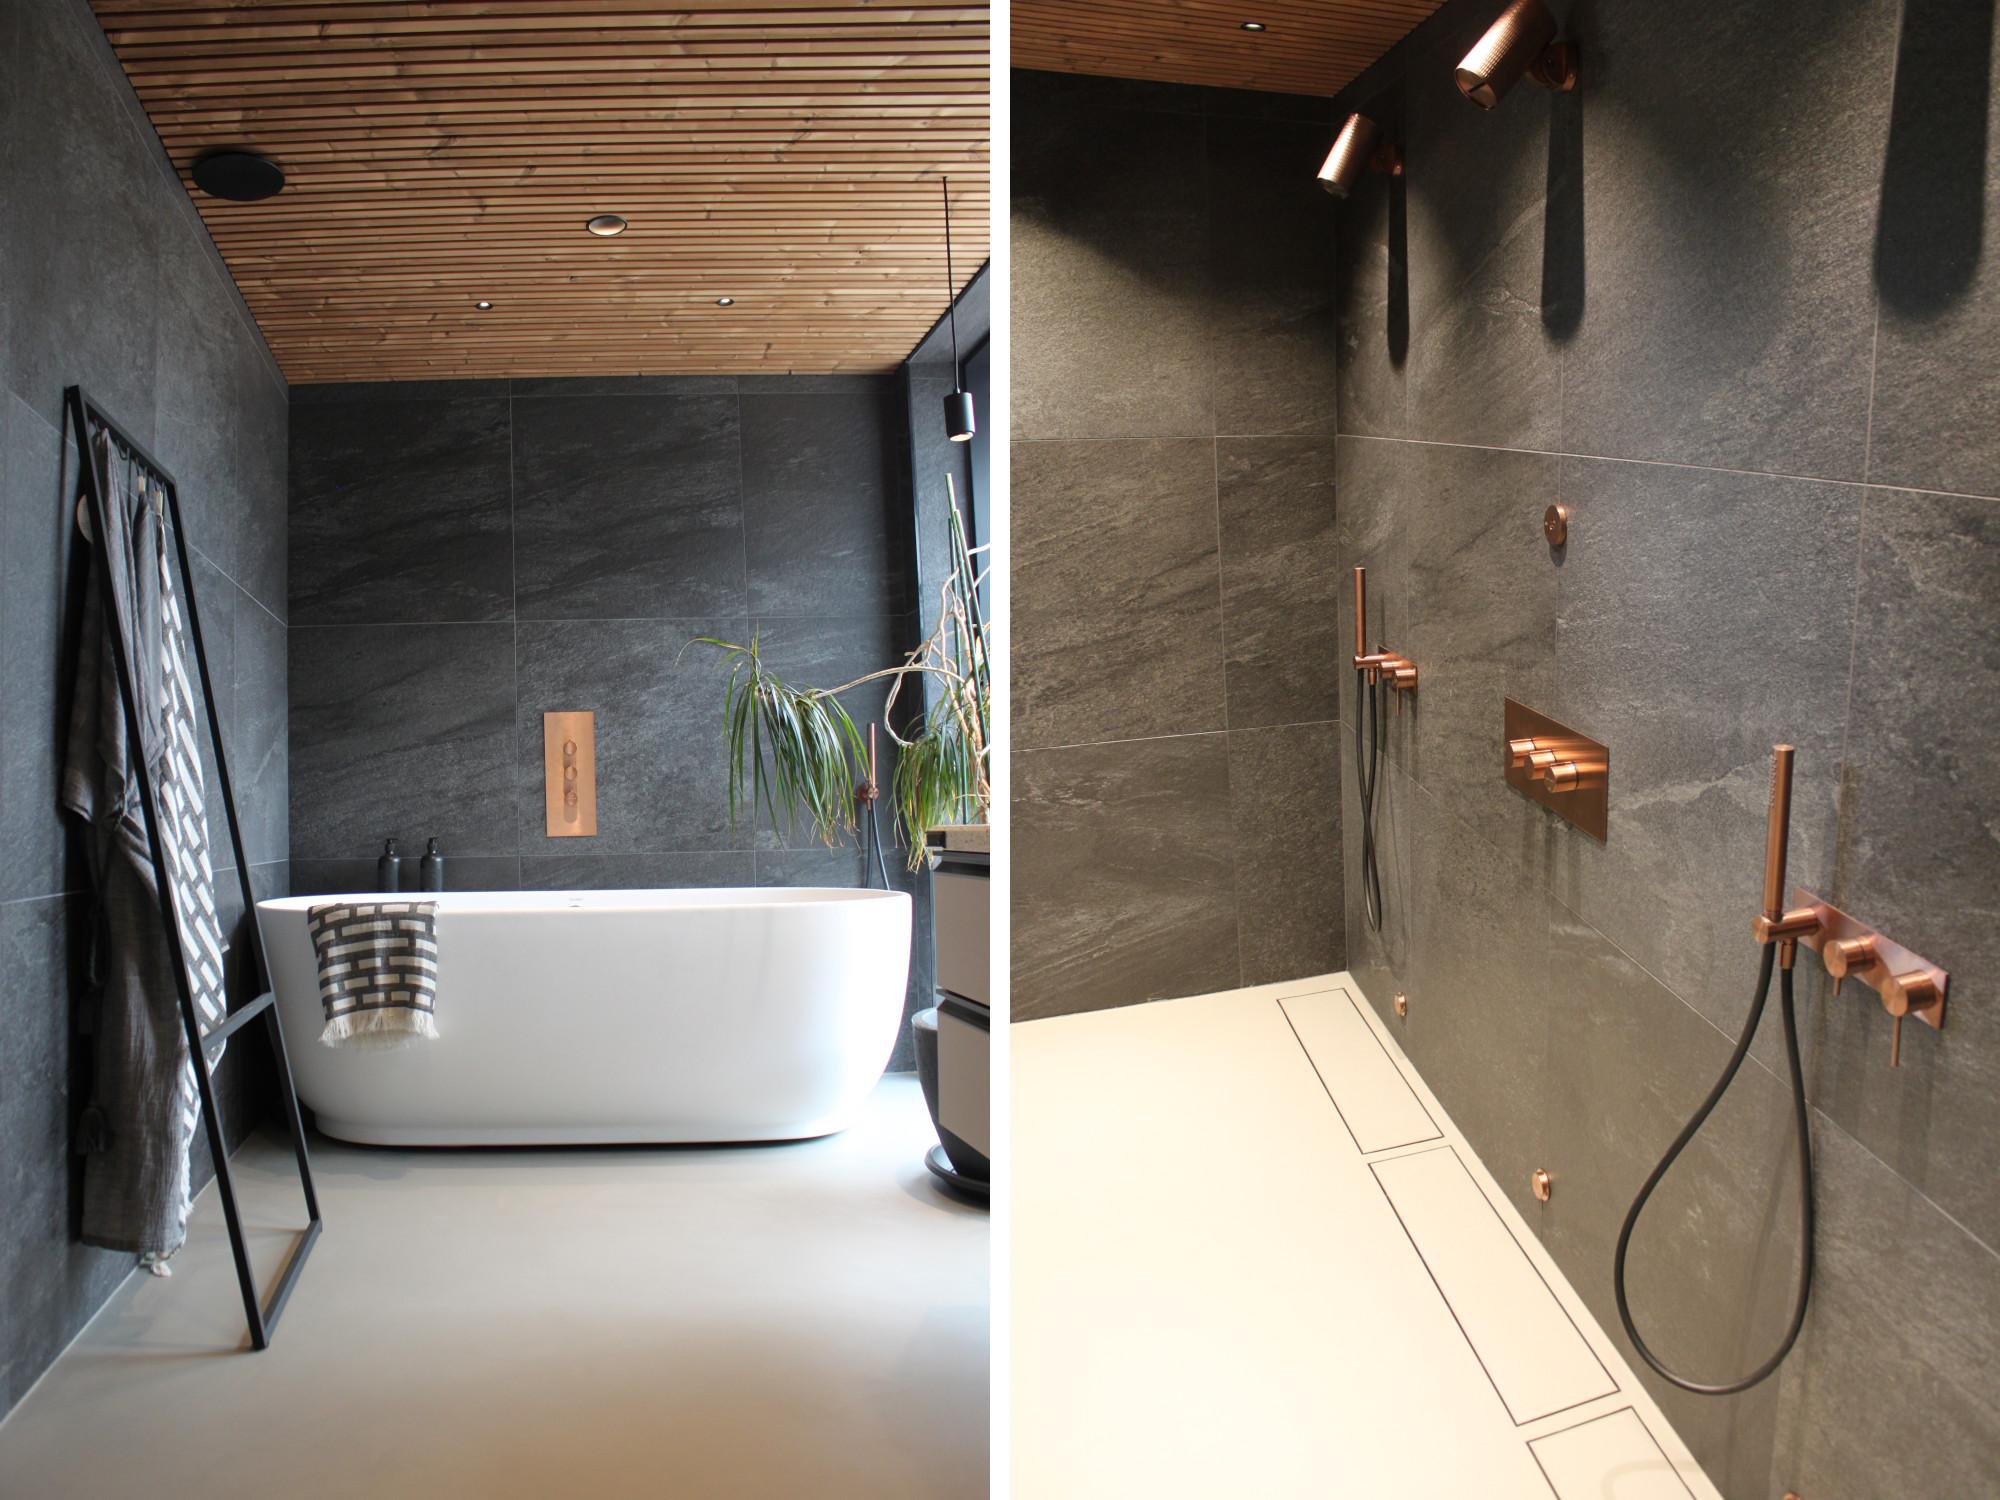 Talo Sensun (8) kylpyhuonetiloissa on ylellisyyden tuntua. Suuret kivimäiset seinälaatat ja yhtenäinen hartsilattiapinta ovat saaneet parikseen mm. Gessin suihkut ja Vieserin linjalattialaivot.